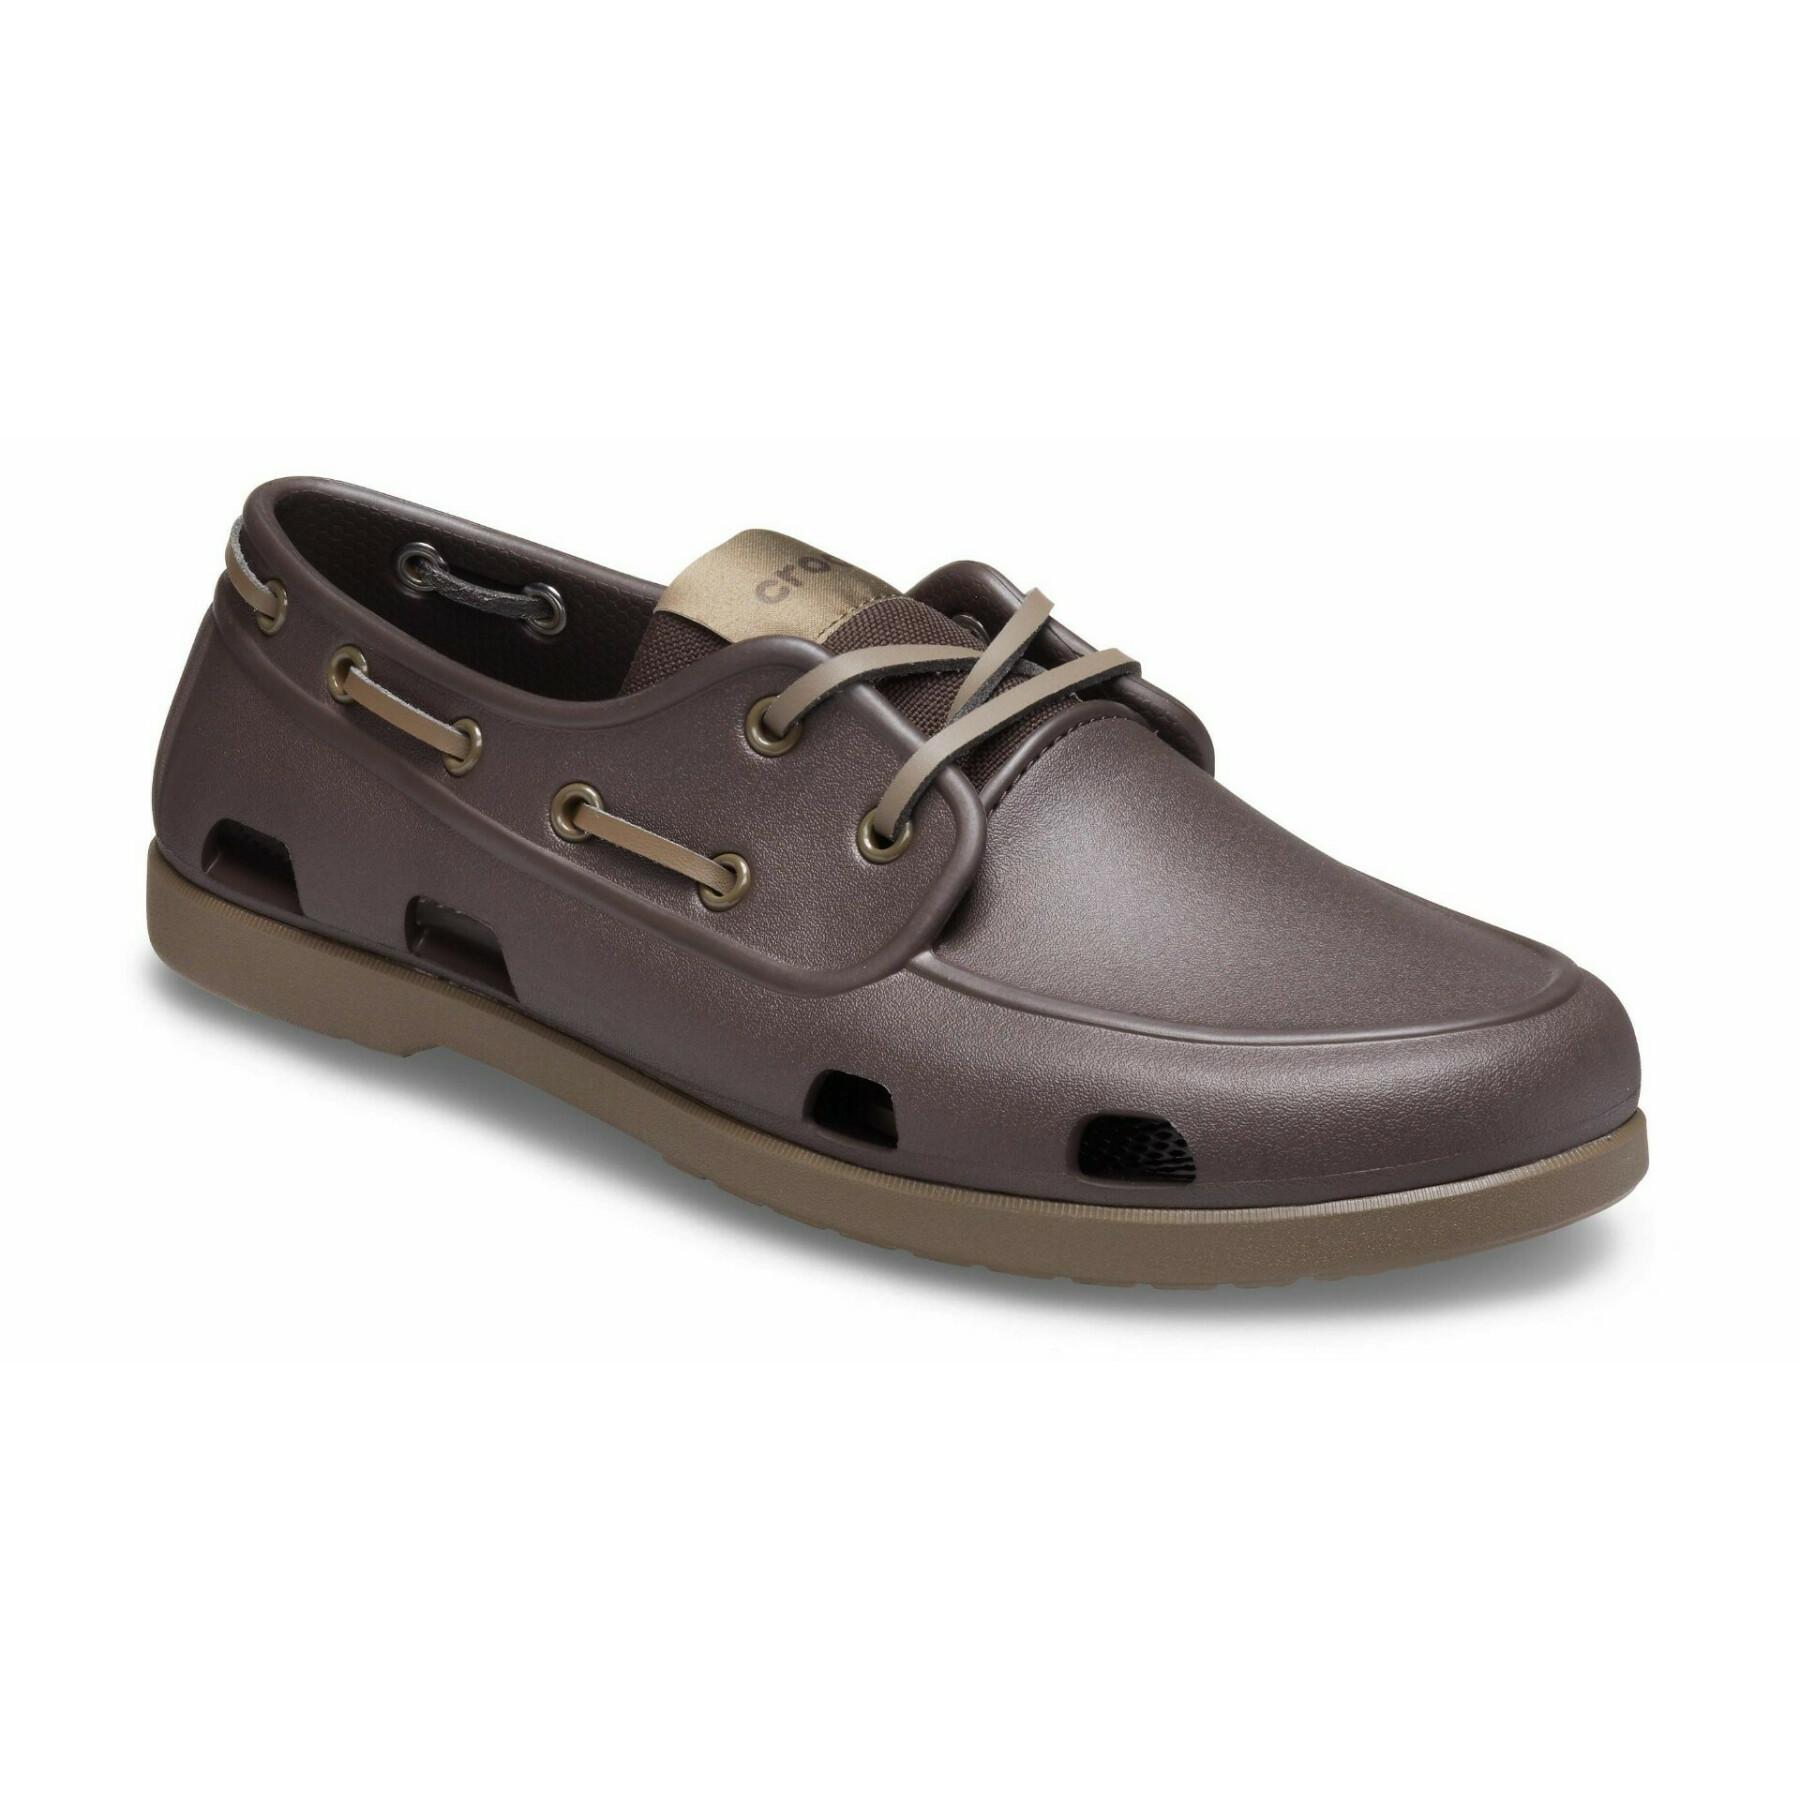 Boat shoes Crocs classic